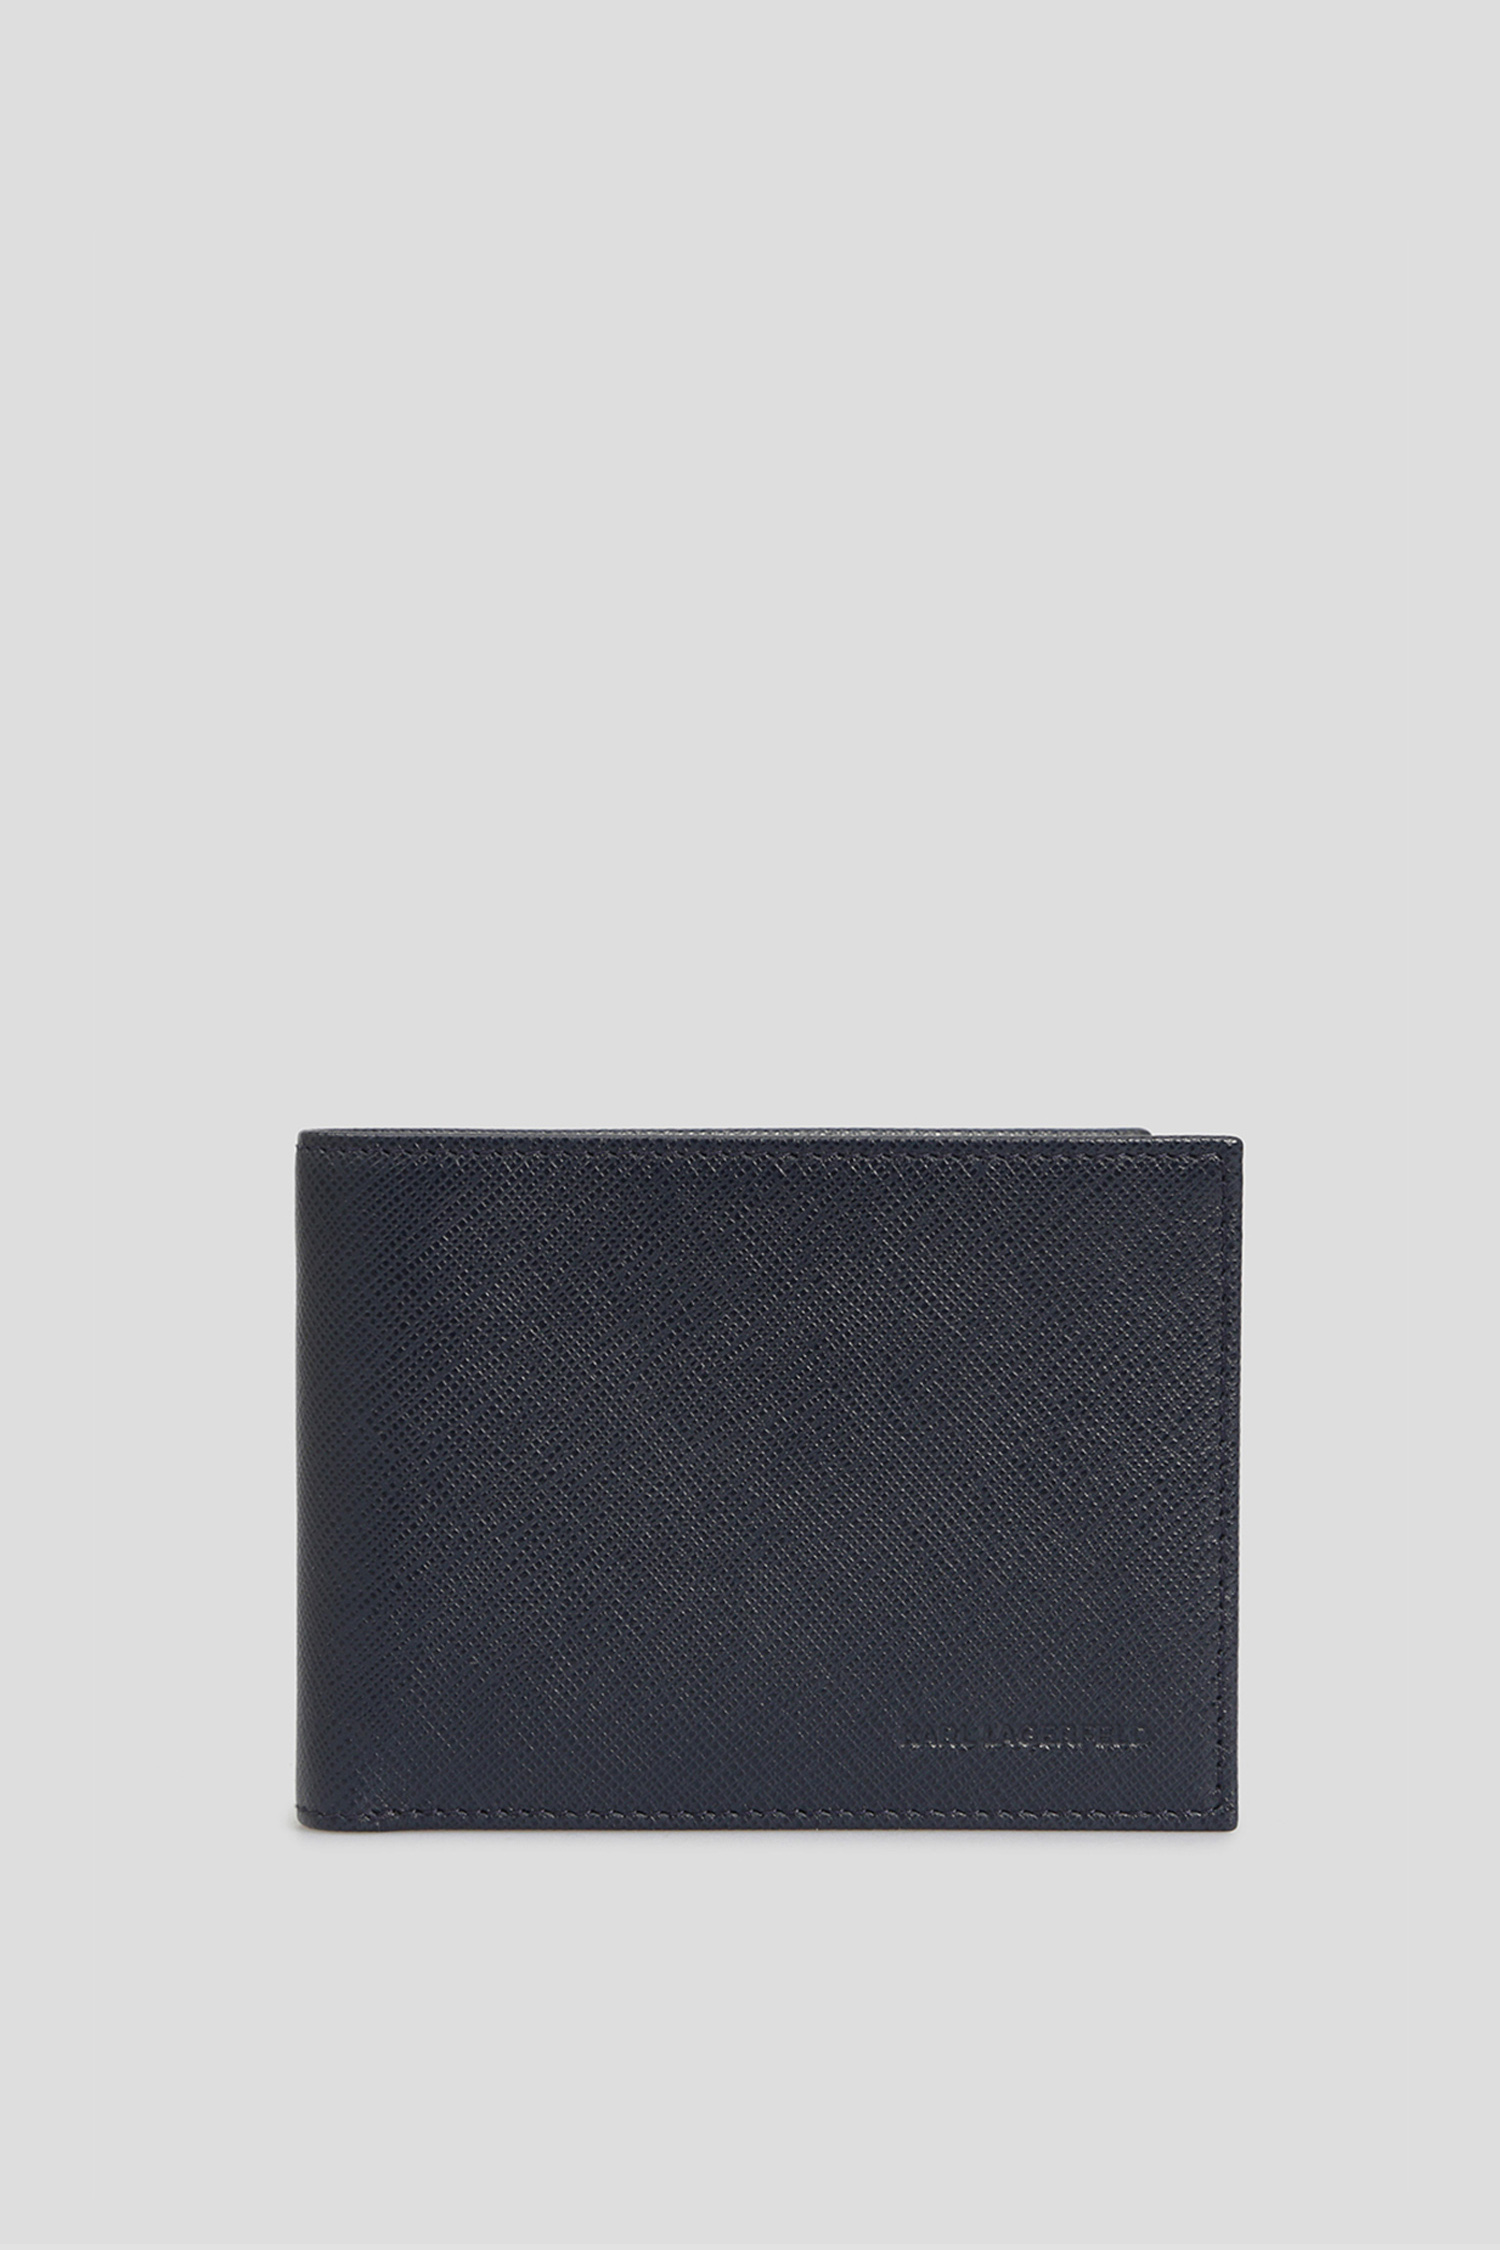 Чоловічий синій шкіряний гаманець Karl Lagerfeld 501461.815417;690